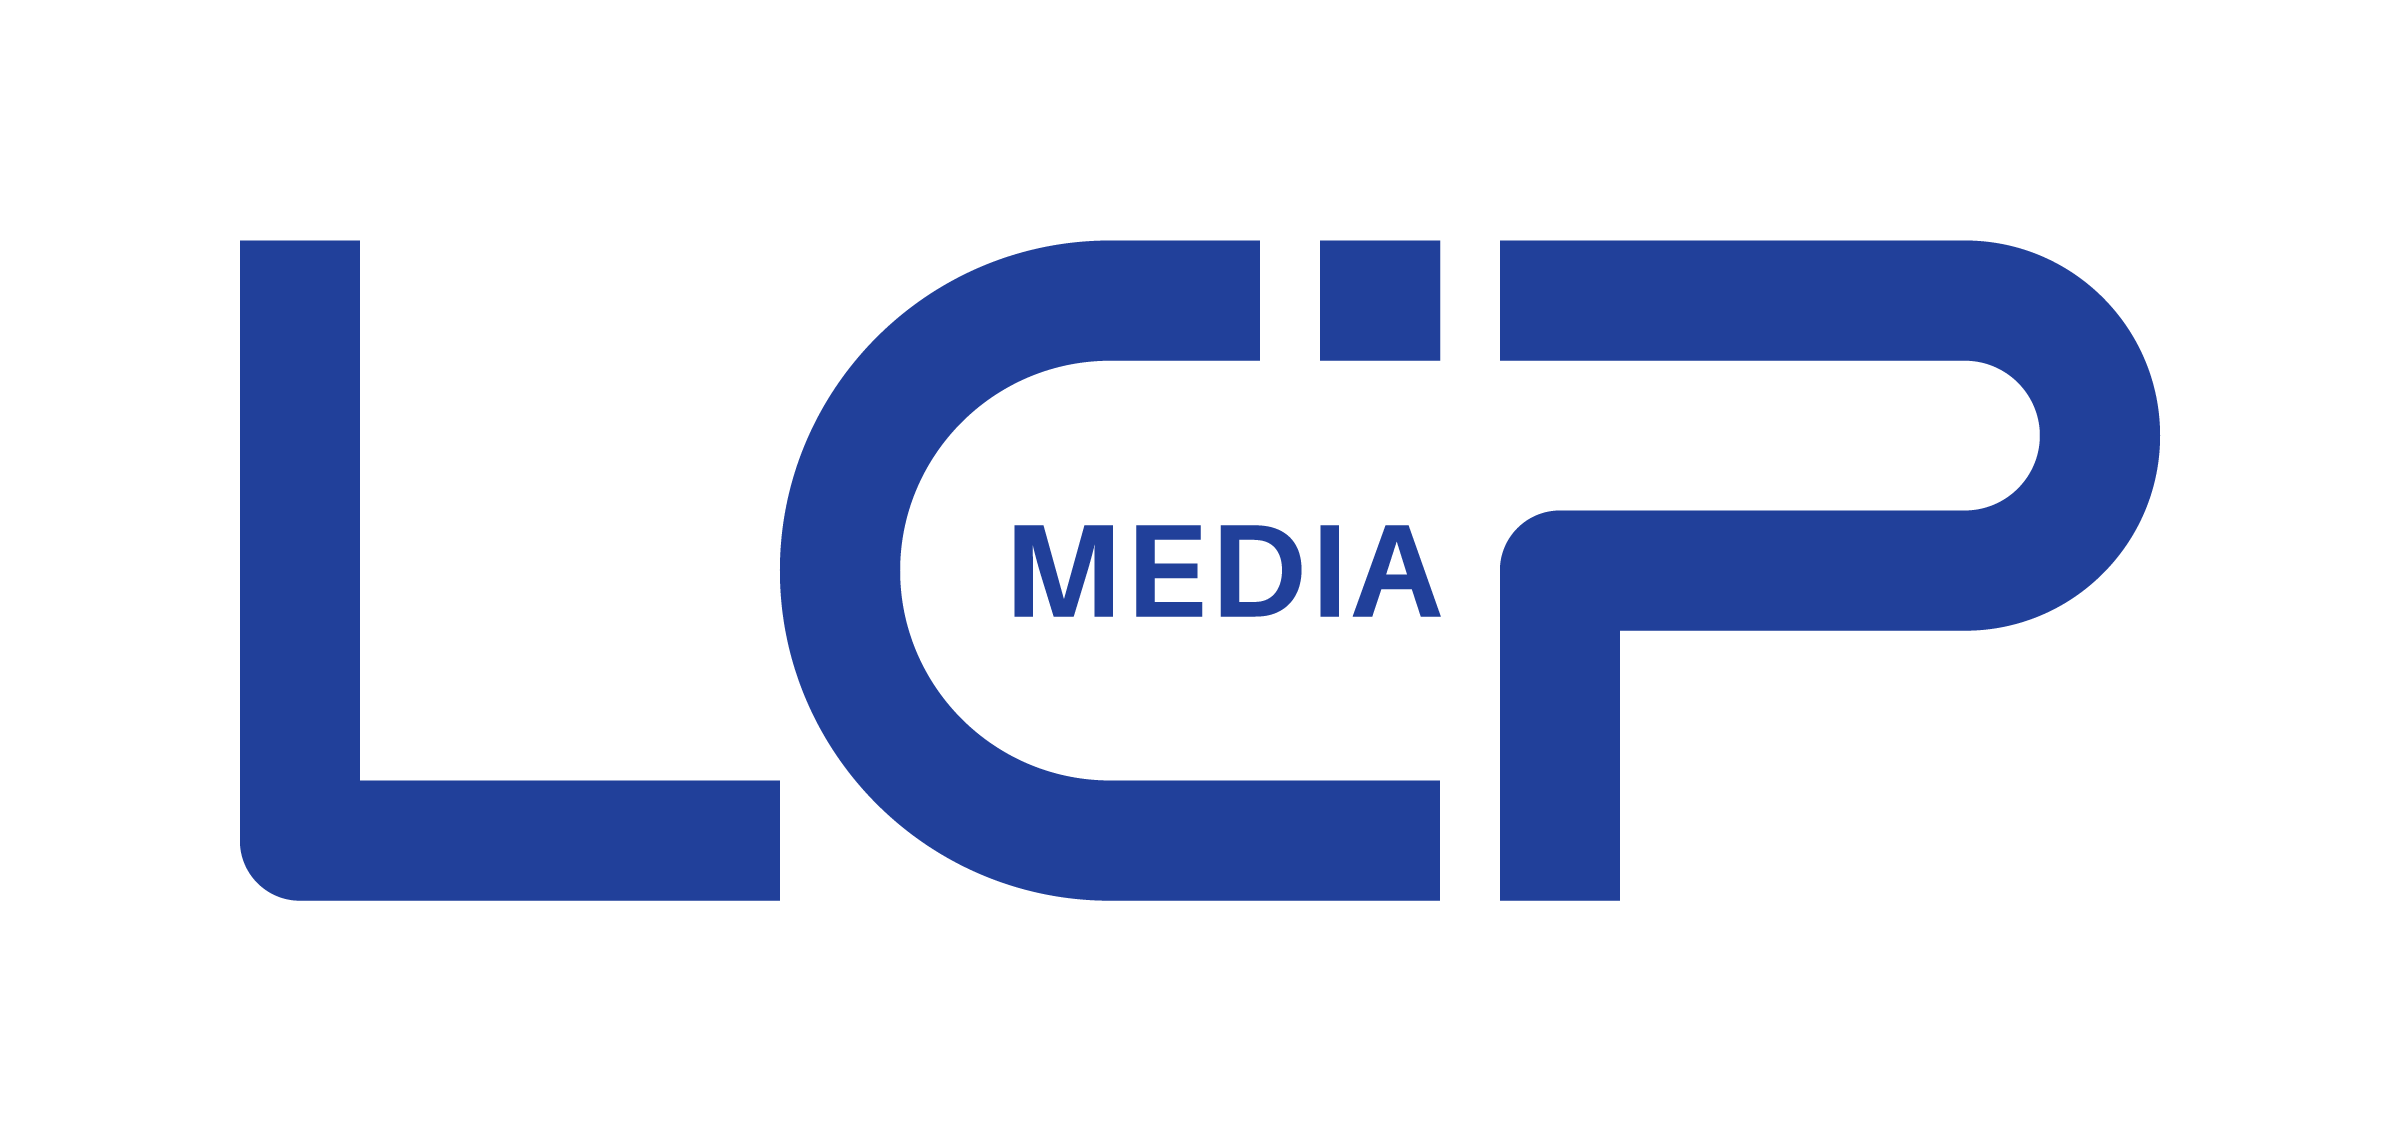 LCP Media